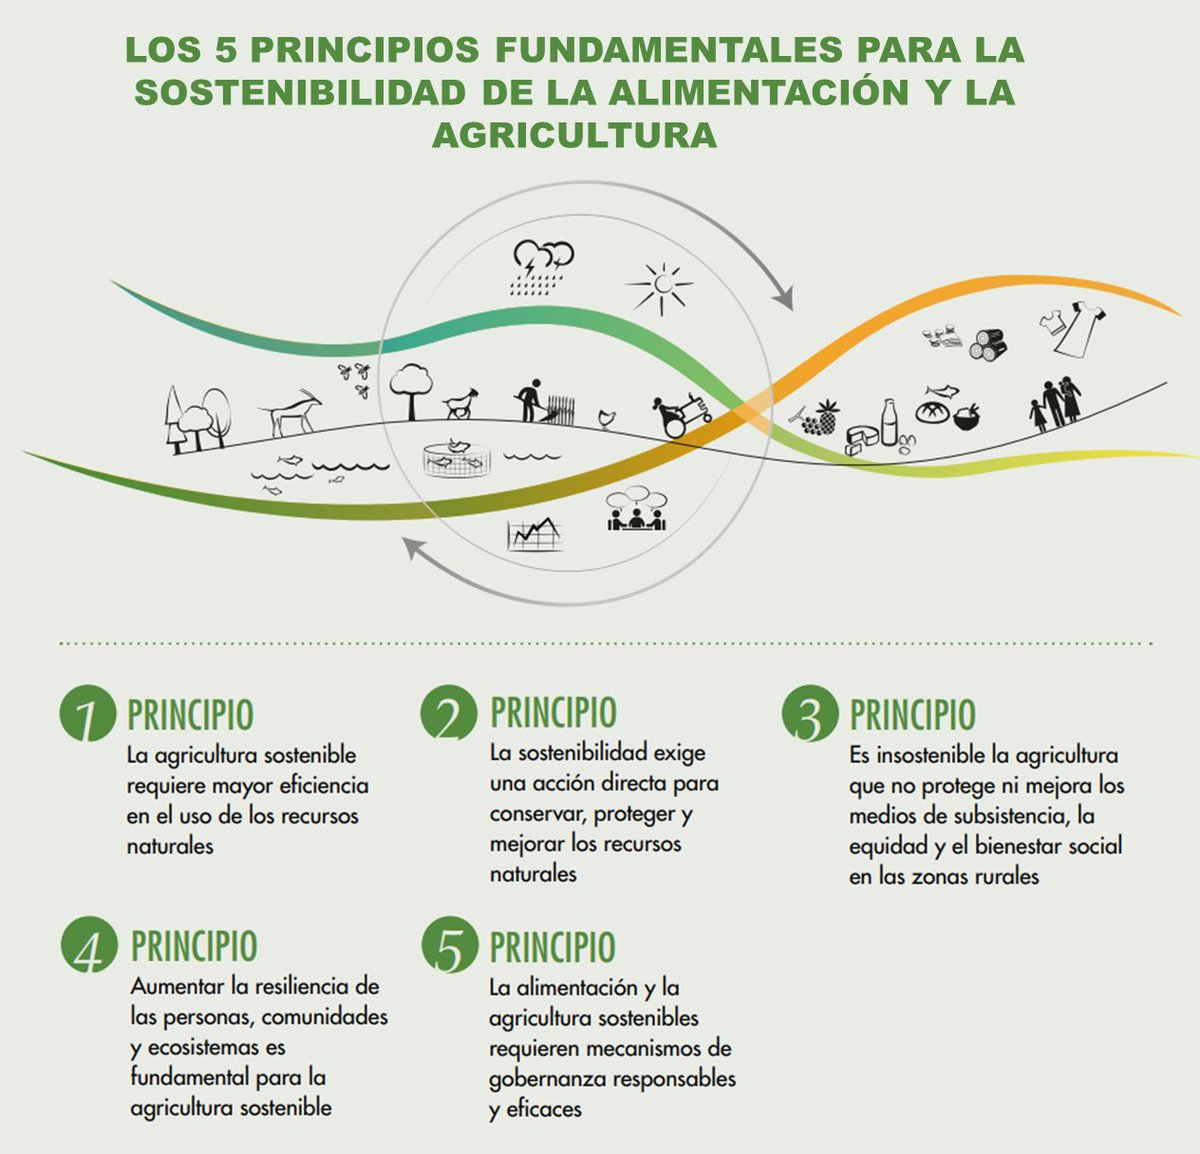 Fao Ecuador On Twitter Los 5 Principios Fundamentales Para La